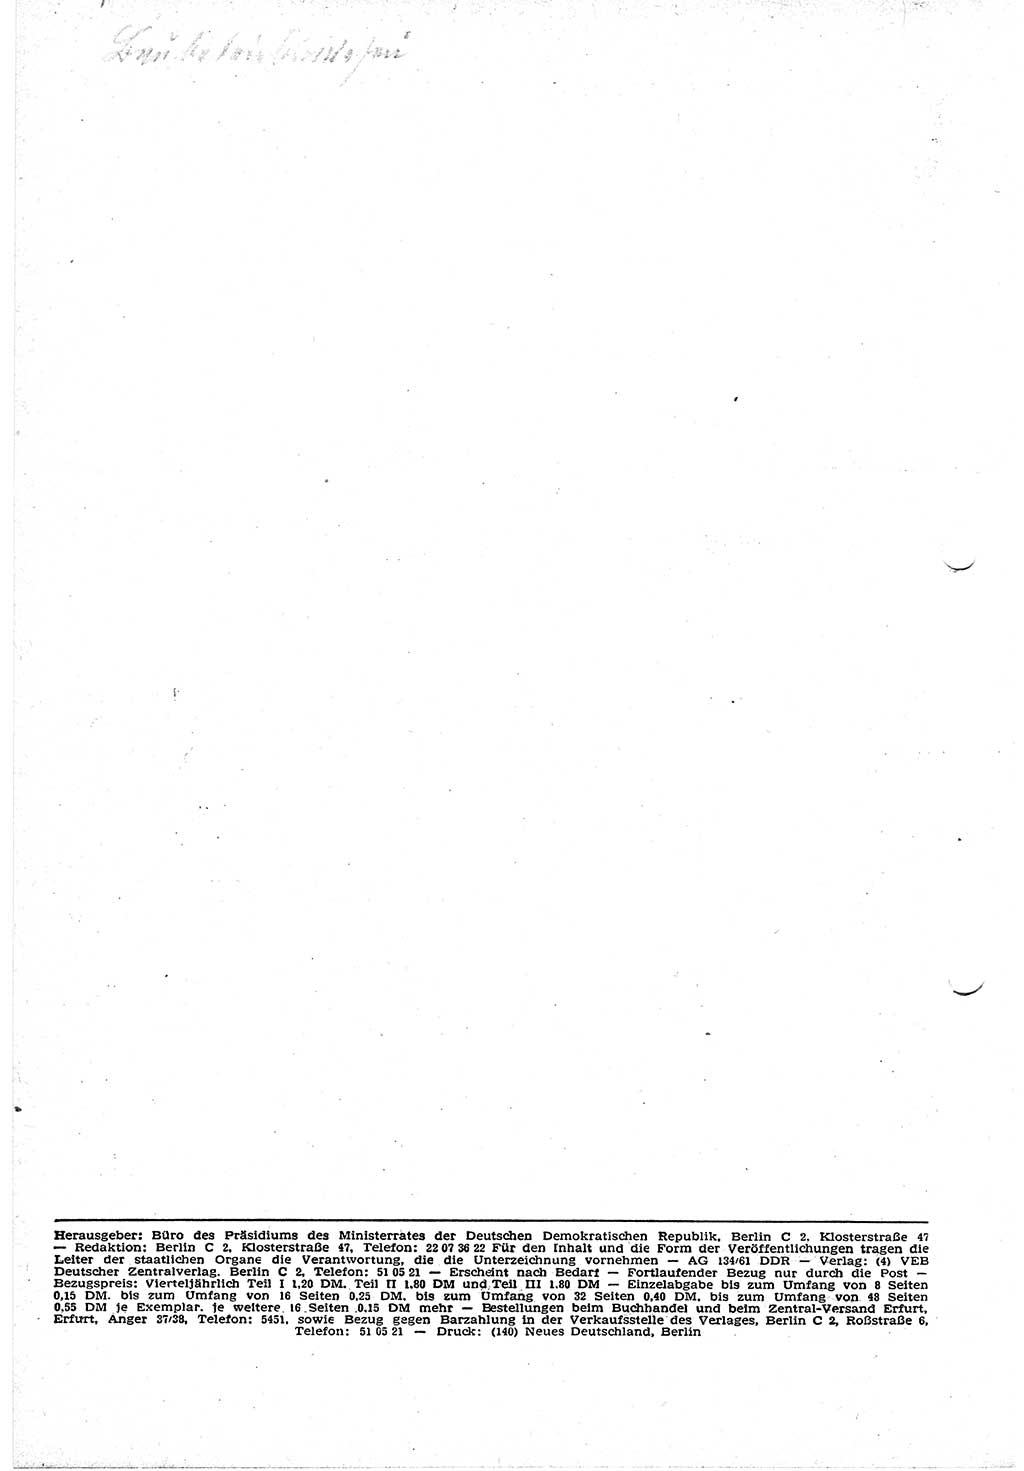 Gesetzblatt (GBl.) der Deutschen Demokratischen Republik (DDR) Teil Ⅰ 1961, Seite 122 (GBl. DDR Ⅰ 1961, S. 122)